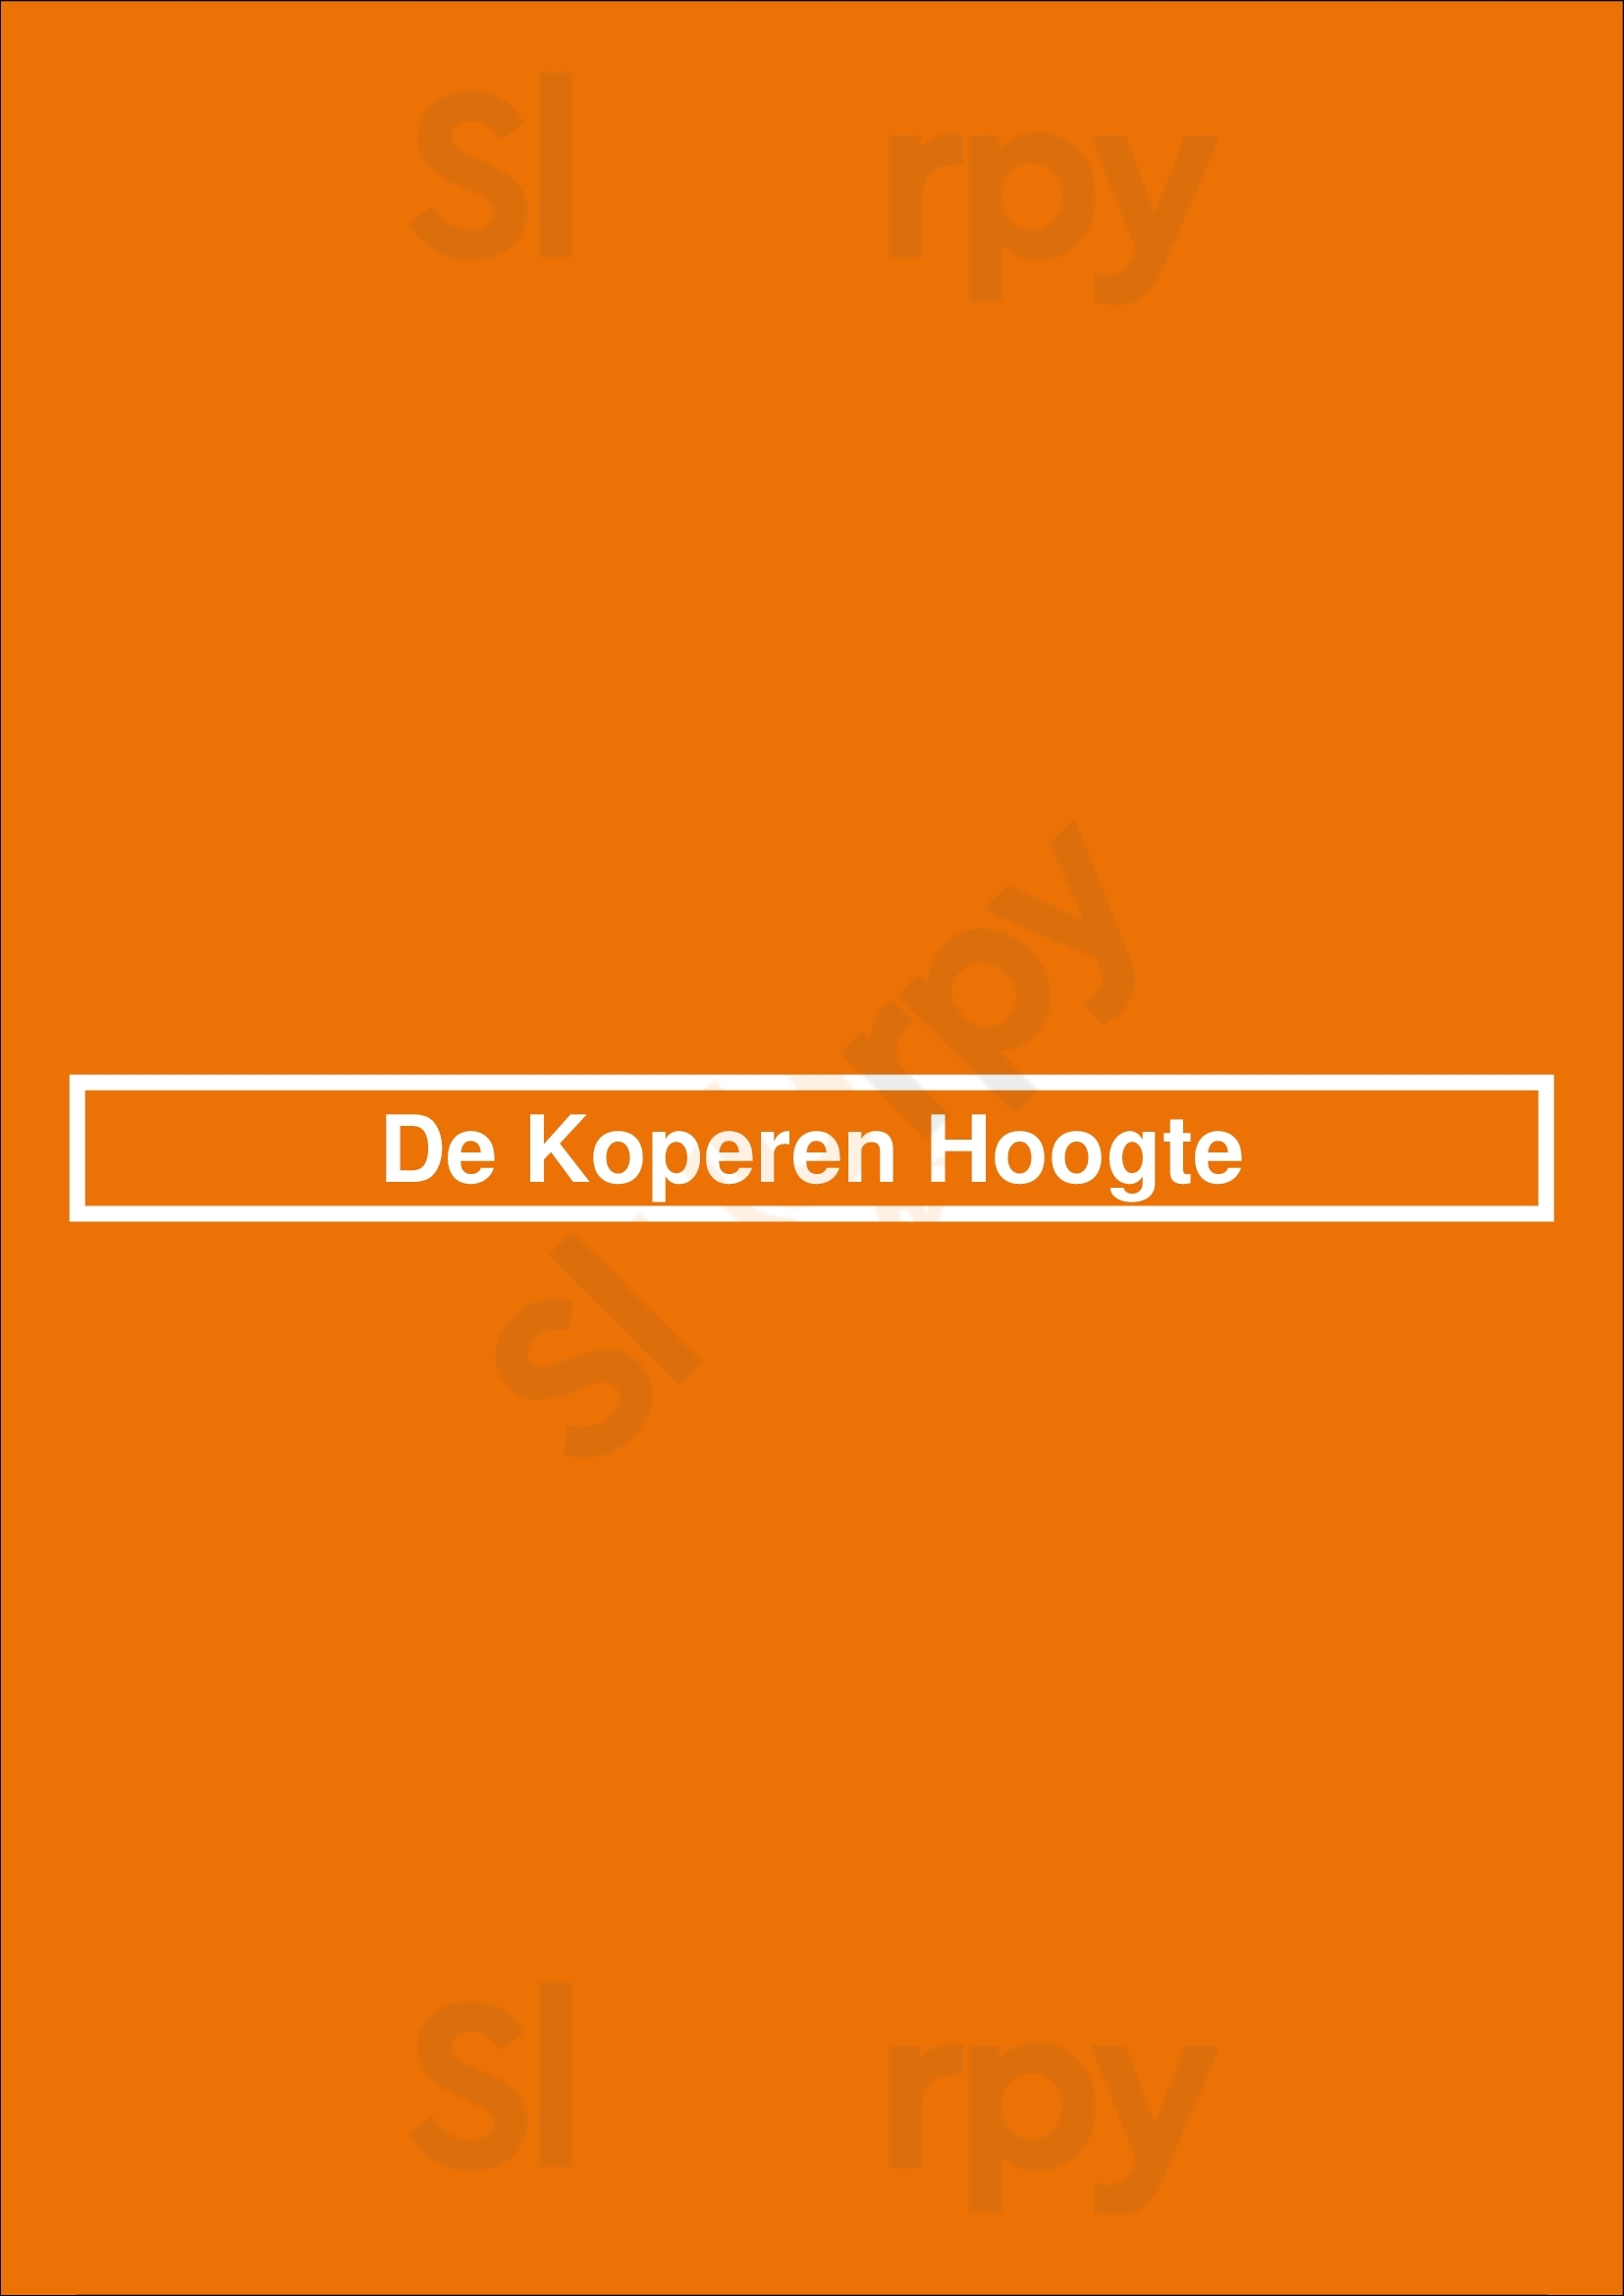 De Koperen Hoogte Zwolle Menu - 1